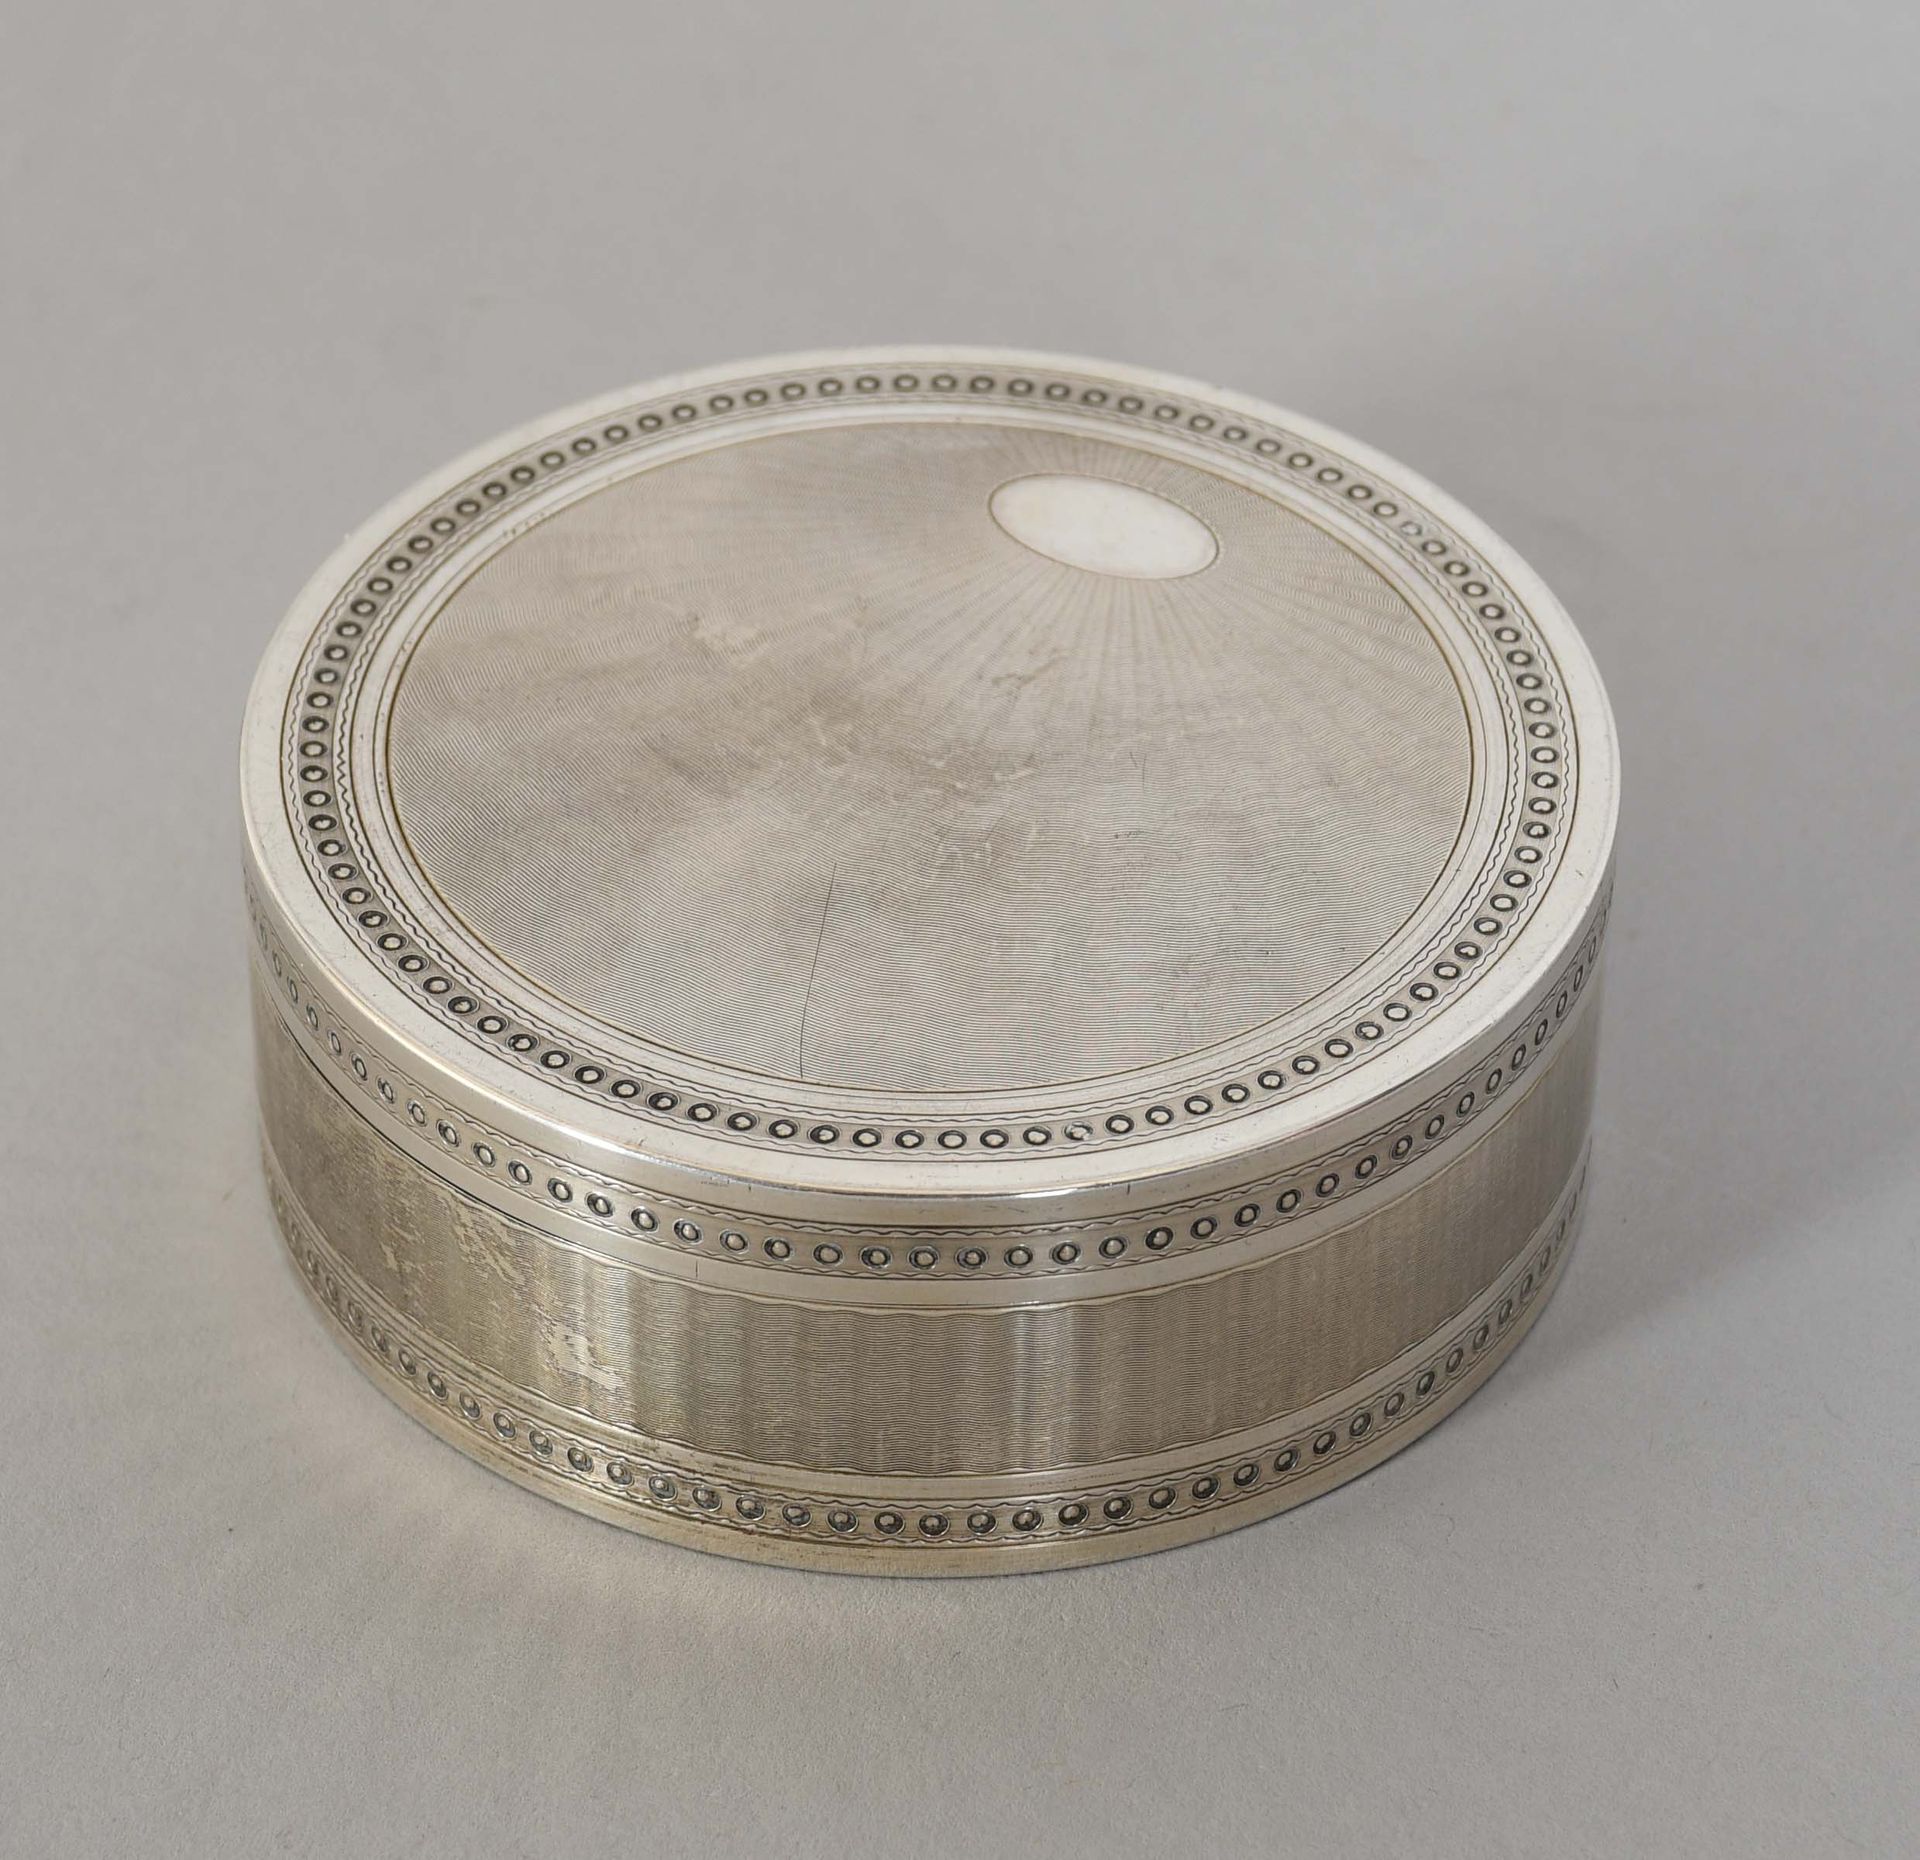 Null Scatola rotonda in argento cesellato, interno in vermeil - marchio Minerva
&hellip;